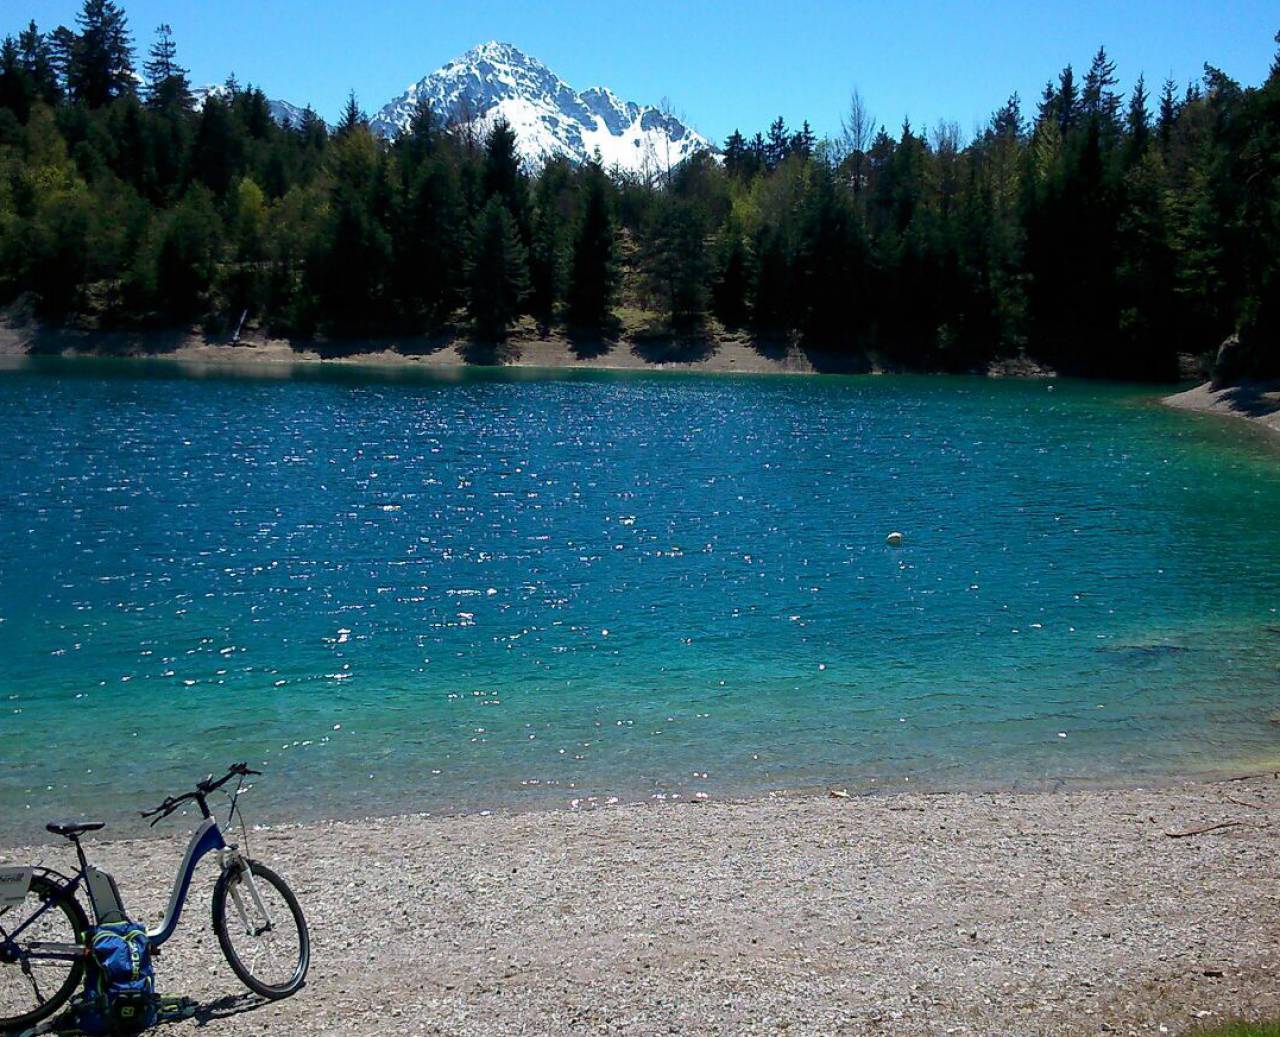 E-Bike vor einem Bergsee im Wald mit verschneiten Bergen